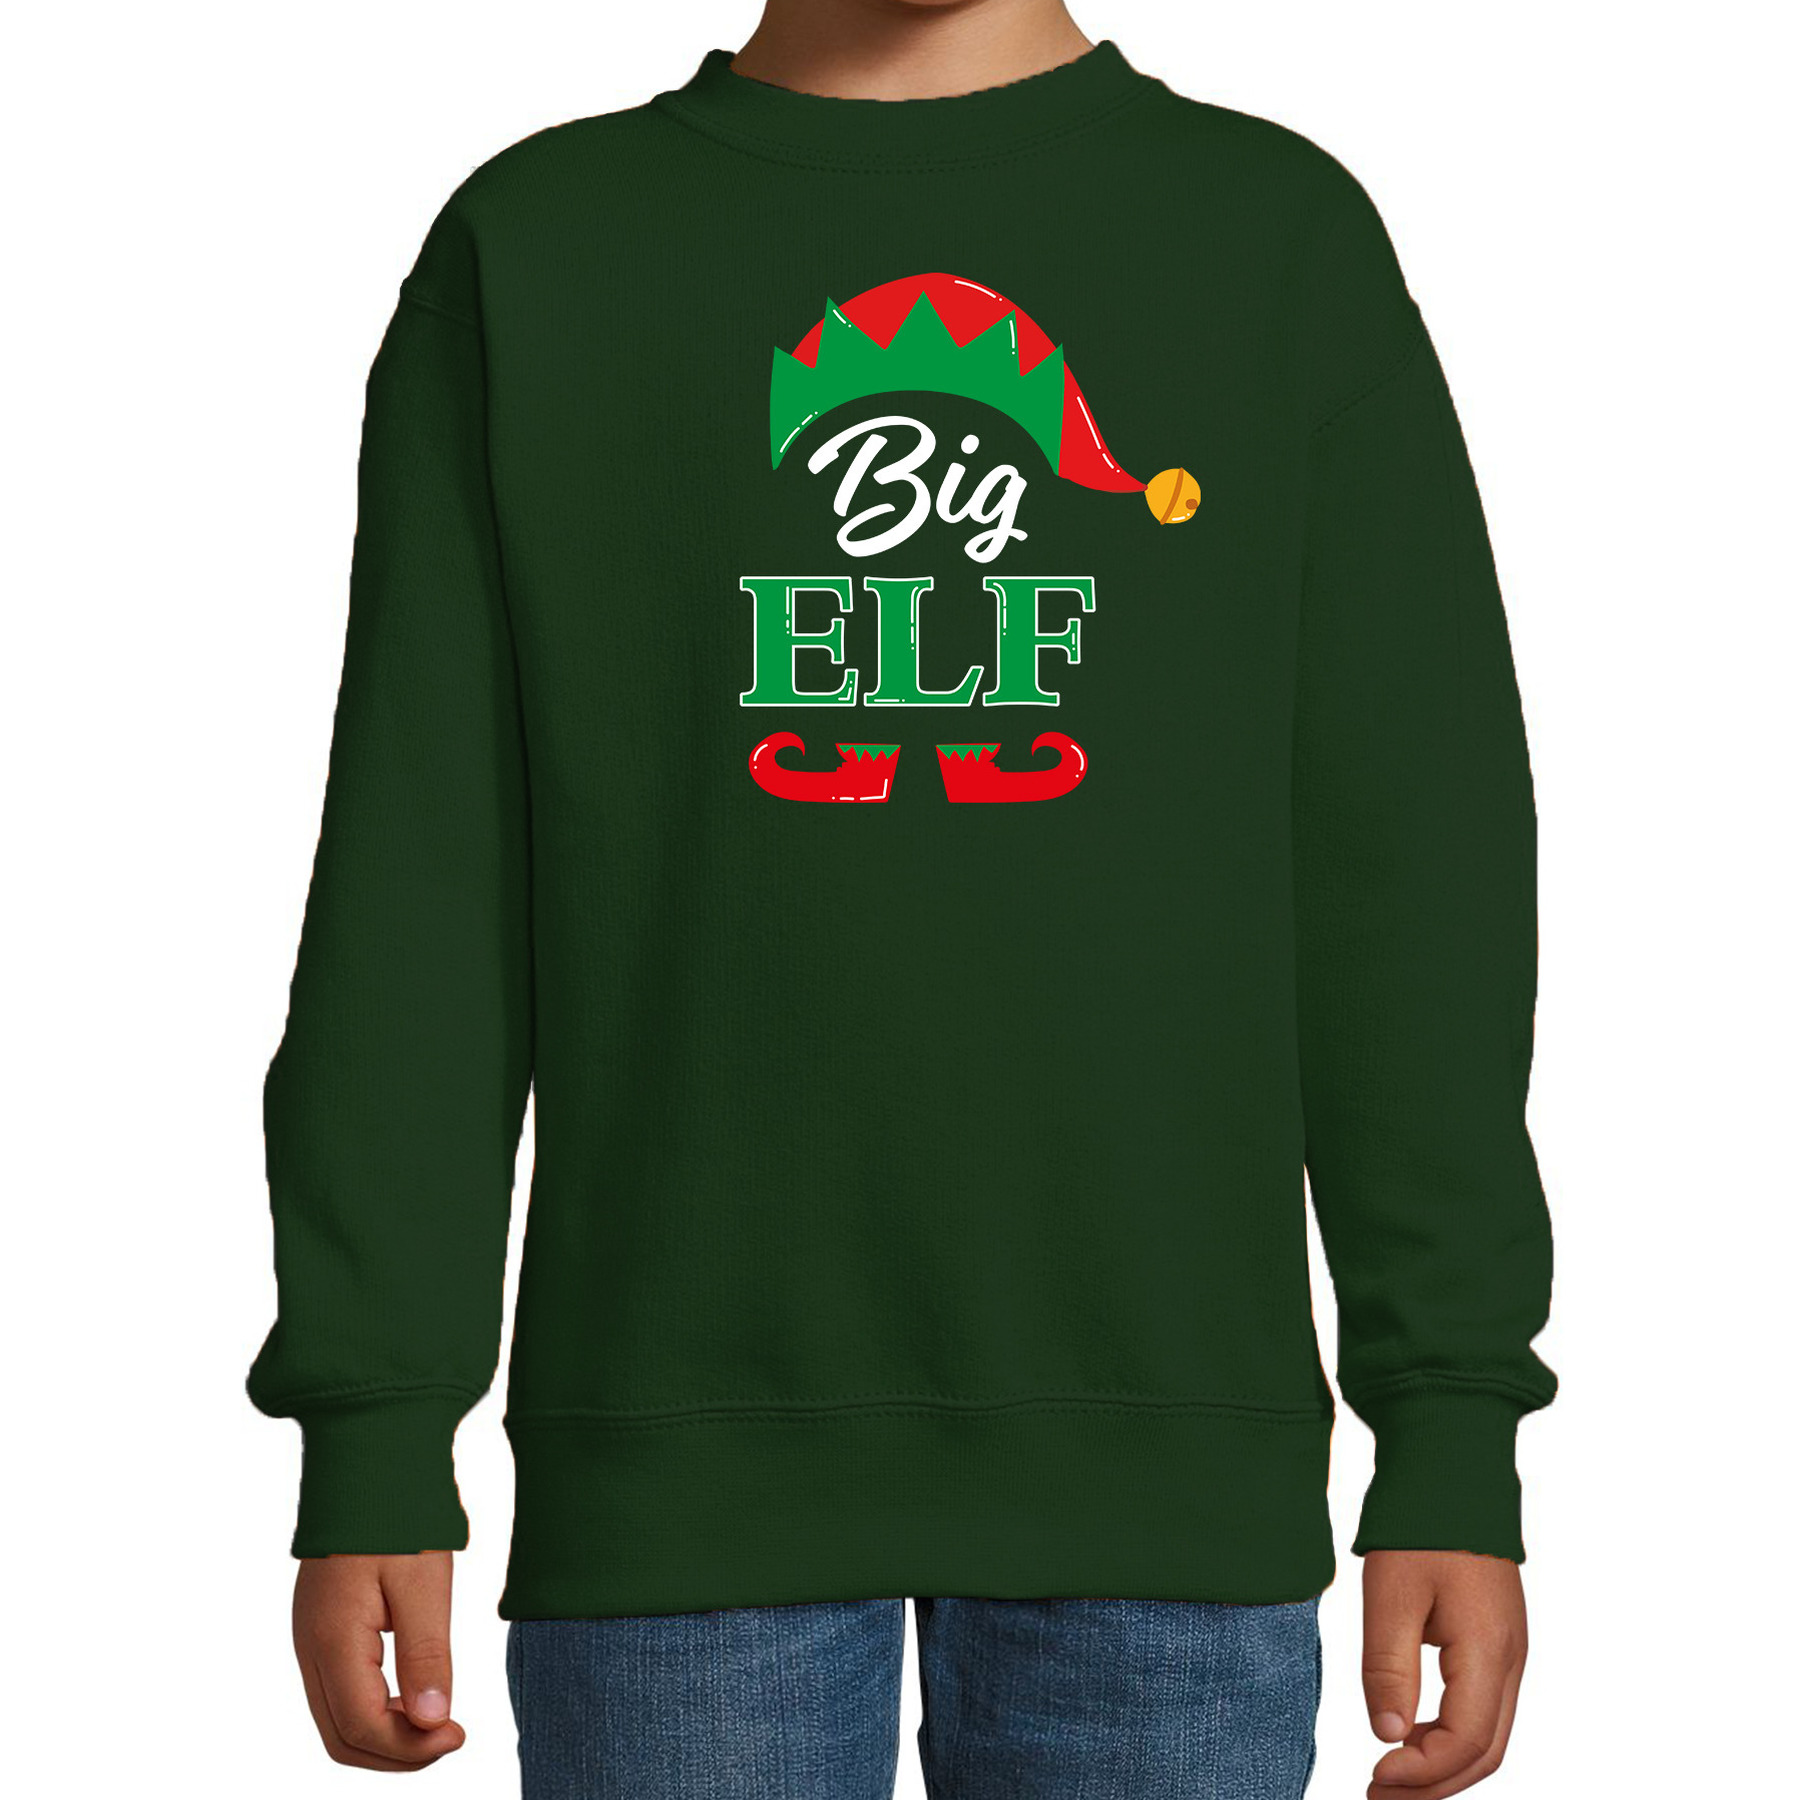 Big elf Kerstsweater-Kersttrui groen voor kinderen